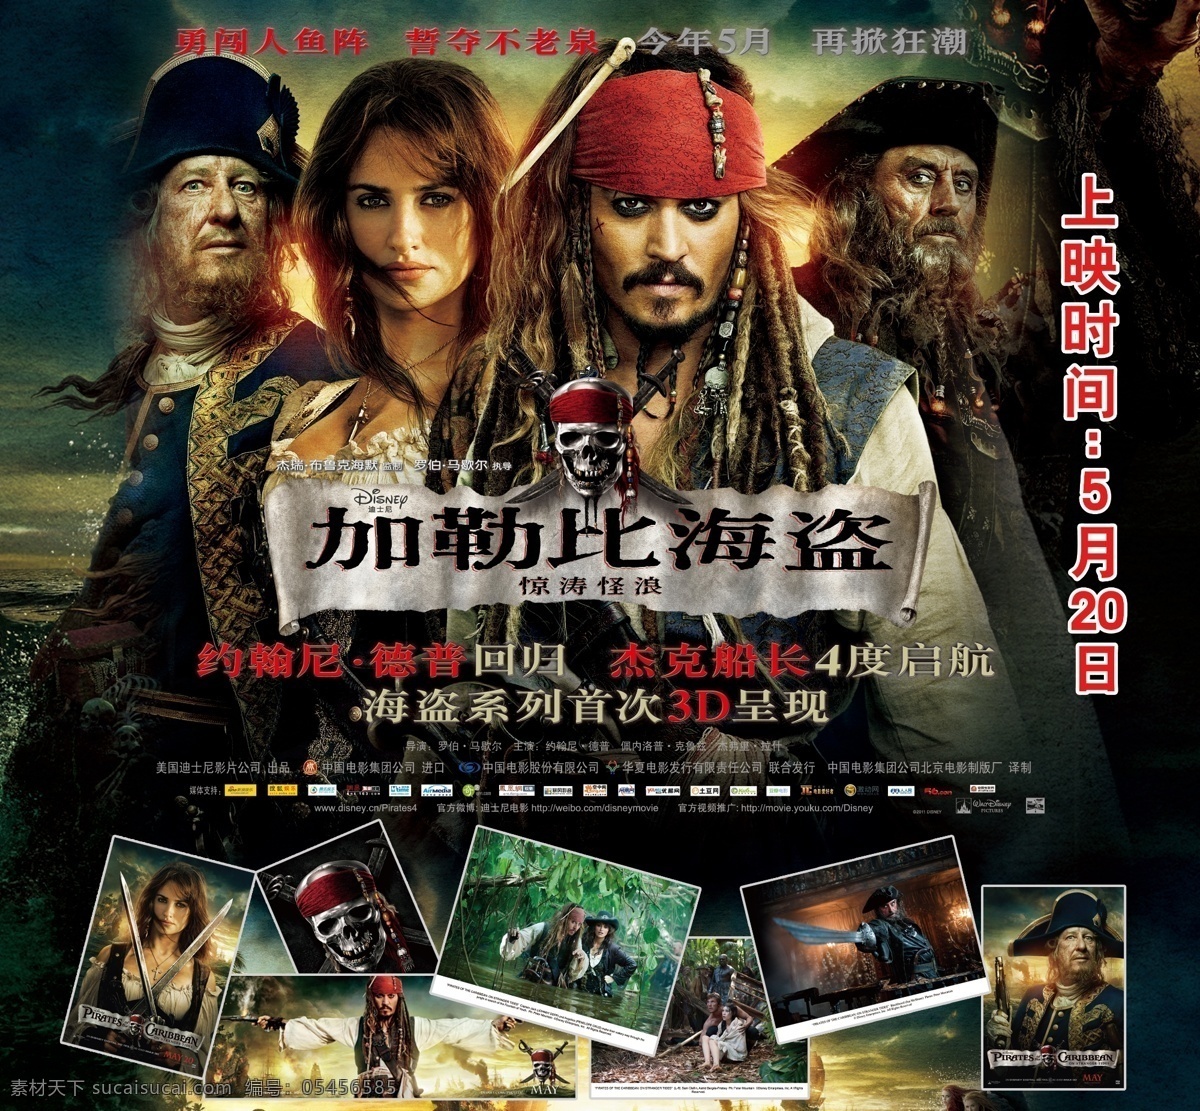 加勒比 海盗 海报 加勒比海盗 电影海报 广告设计模板 源文件